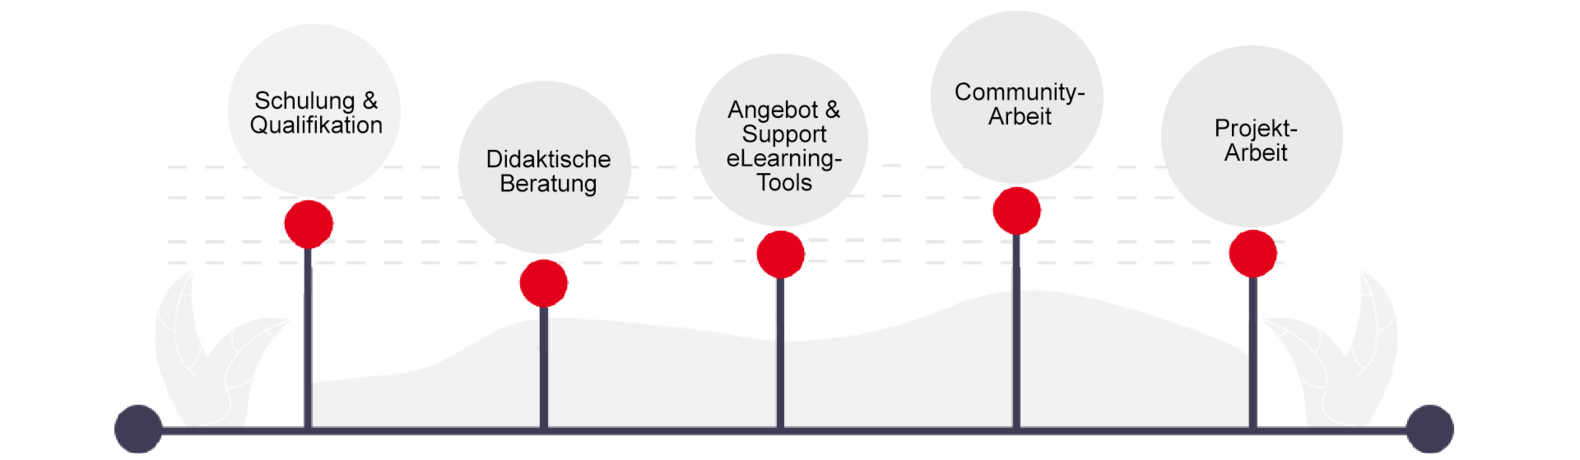 Eine Grafik mit 5 Säulen: Schulung & Qualifikation, Didaktische Beratung, Angebot & Support E-Learning-Tools, Community-Arbeit, Projektarbeit